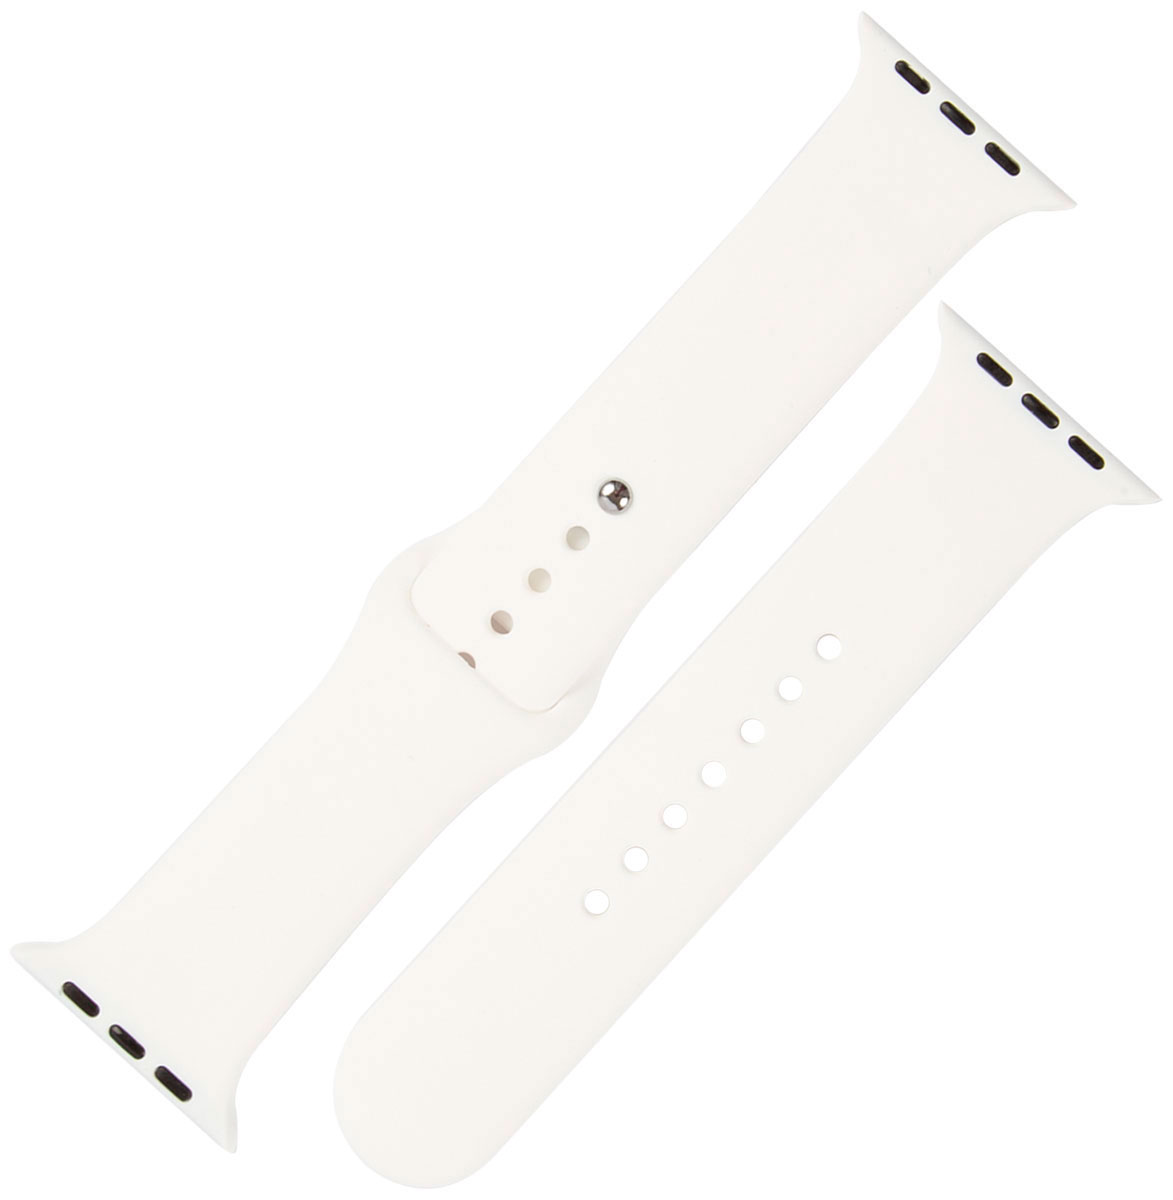 Ремешок силиконовый mObility для Apple watch - 38-40 мм (S3/S4/S5 SE/S6), белый разъем питания постоянного тока для ноутбука разъем для зарядки для lenovo thinkpad s3 s431 s3 s440 s5 s531 s5 s540